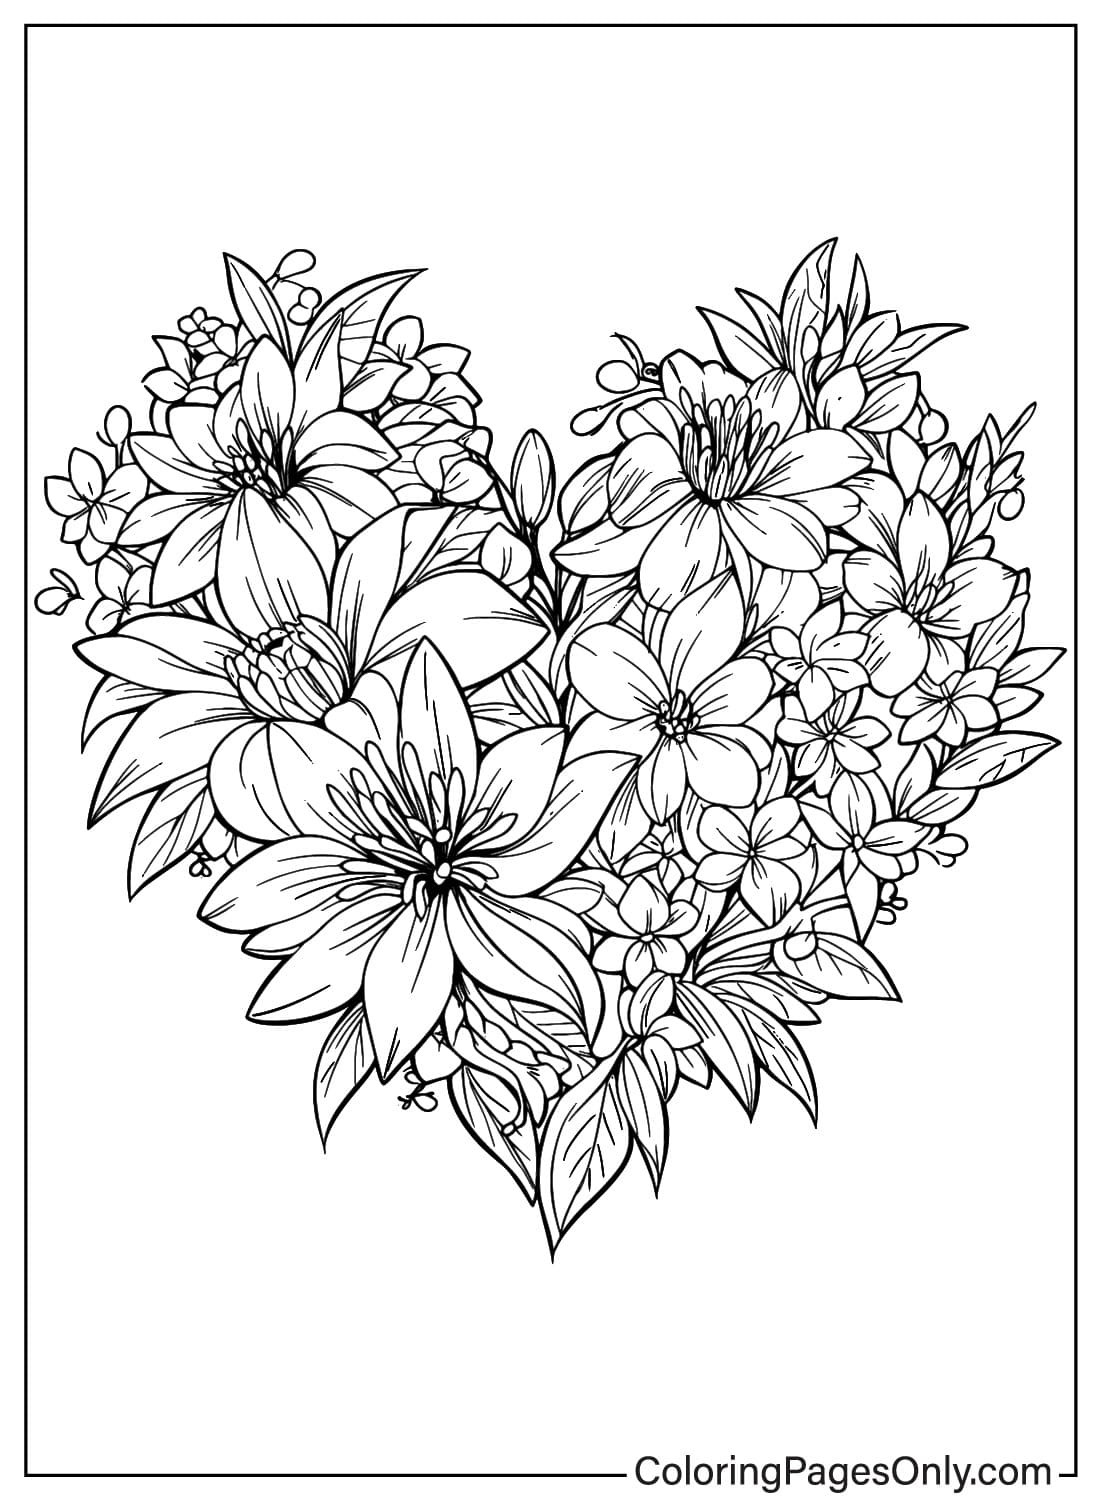 Página para colorear de flor de corazón